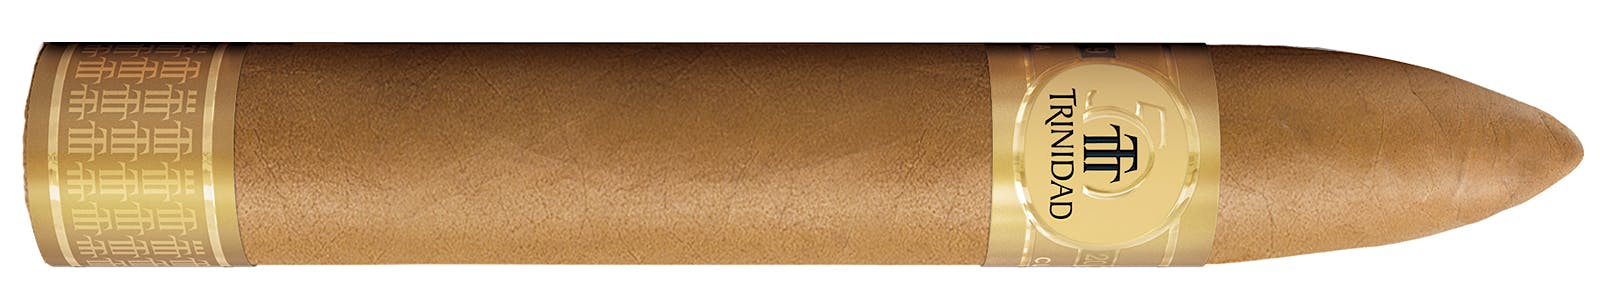 The Trinidad 50 Aniversario cigar